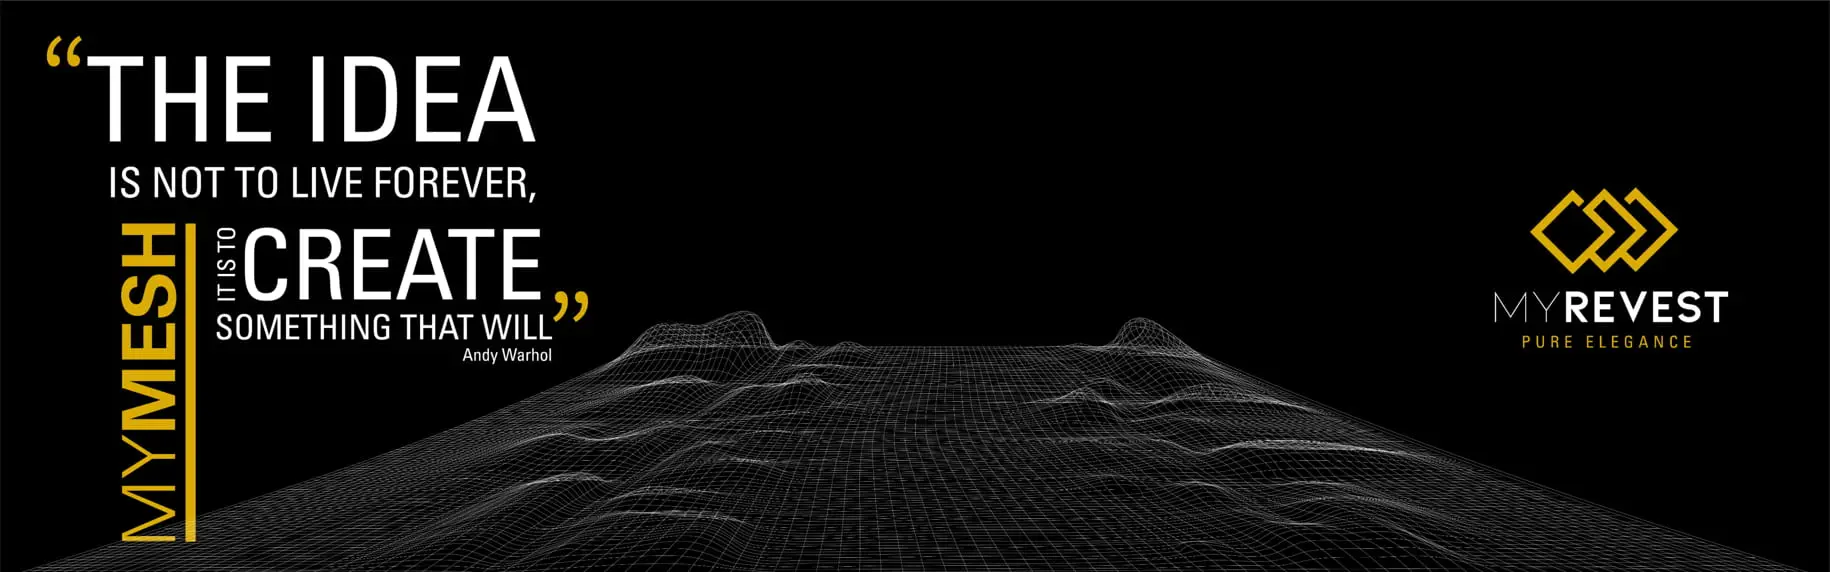 3D plan med et utvidet glassfiber nettverk på en svart bakgrunn og med MyRevest-logoen øverst